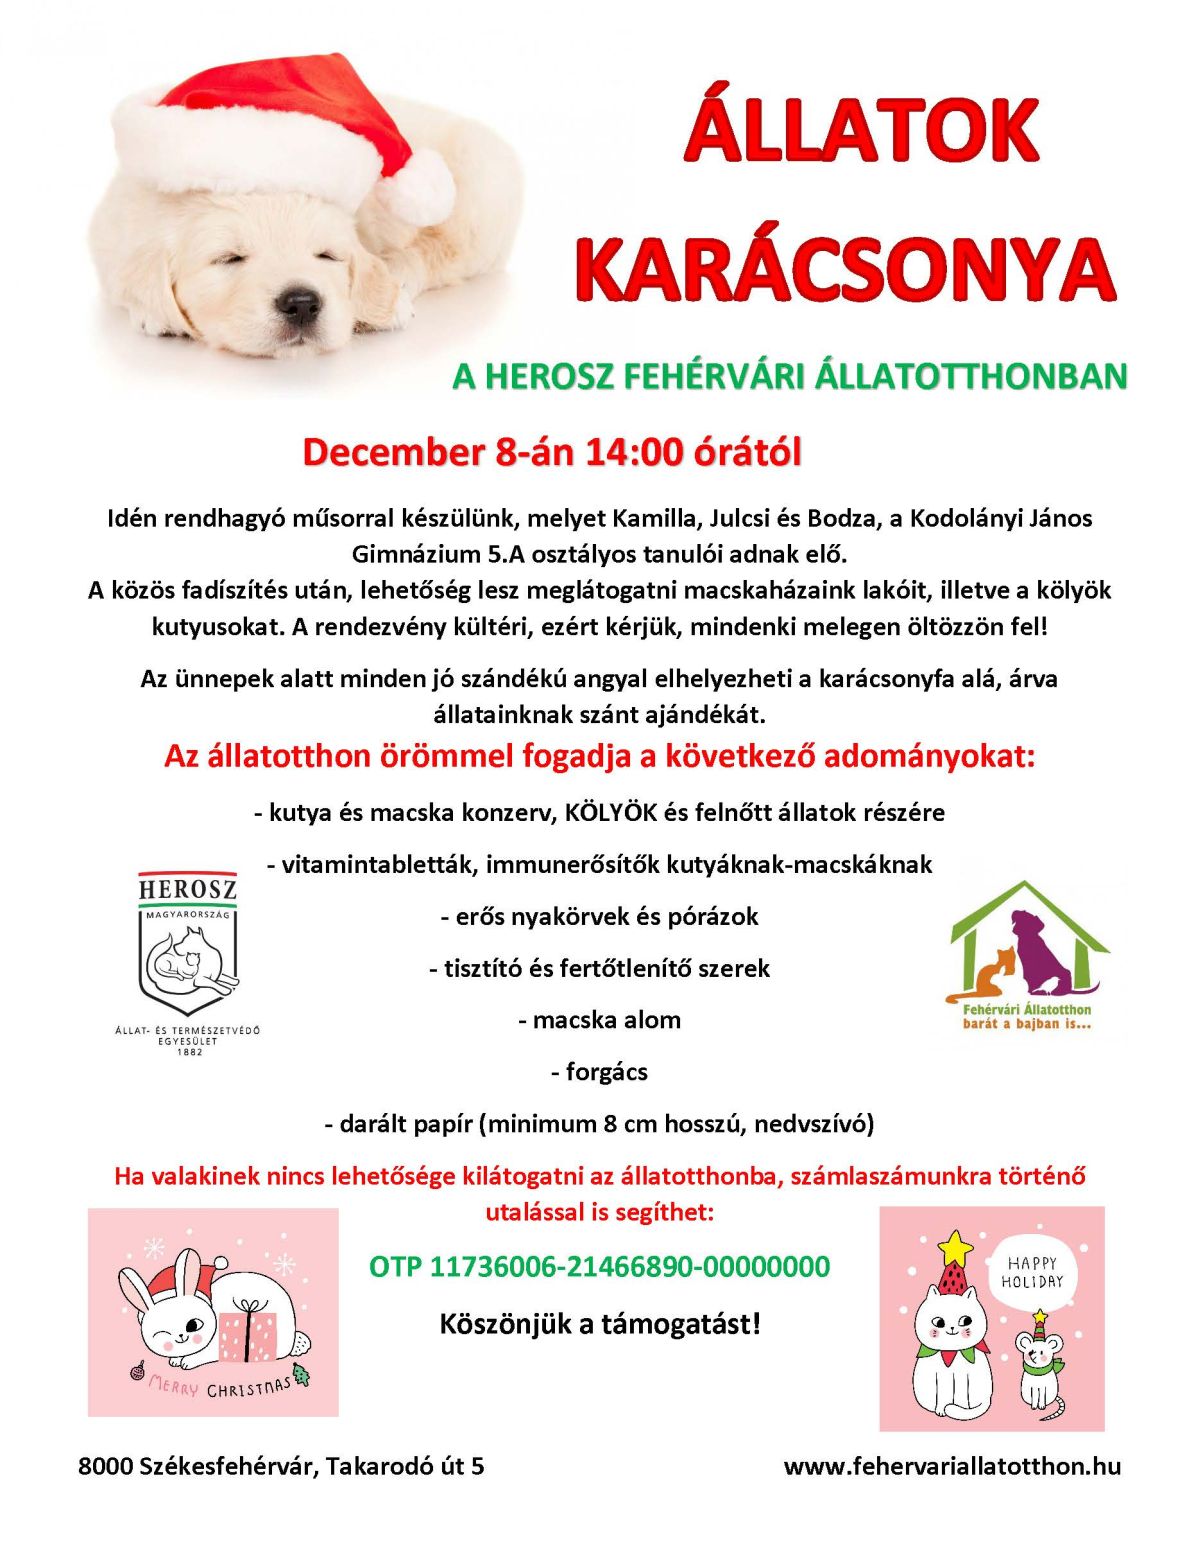 Rendhagyó műsorral készülnek a péntek délutáni Állatok Karácsonyára a HEROSZ-nál